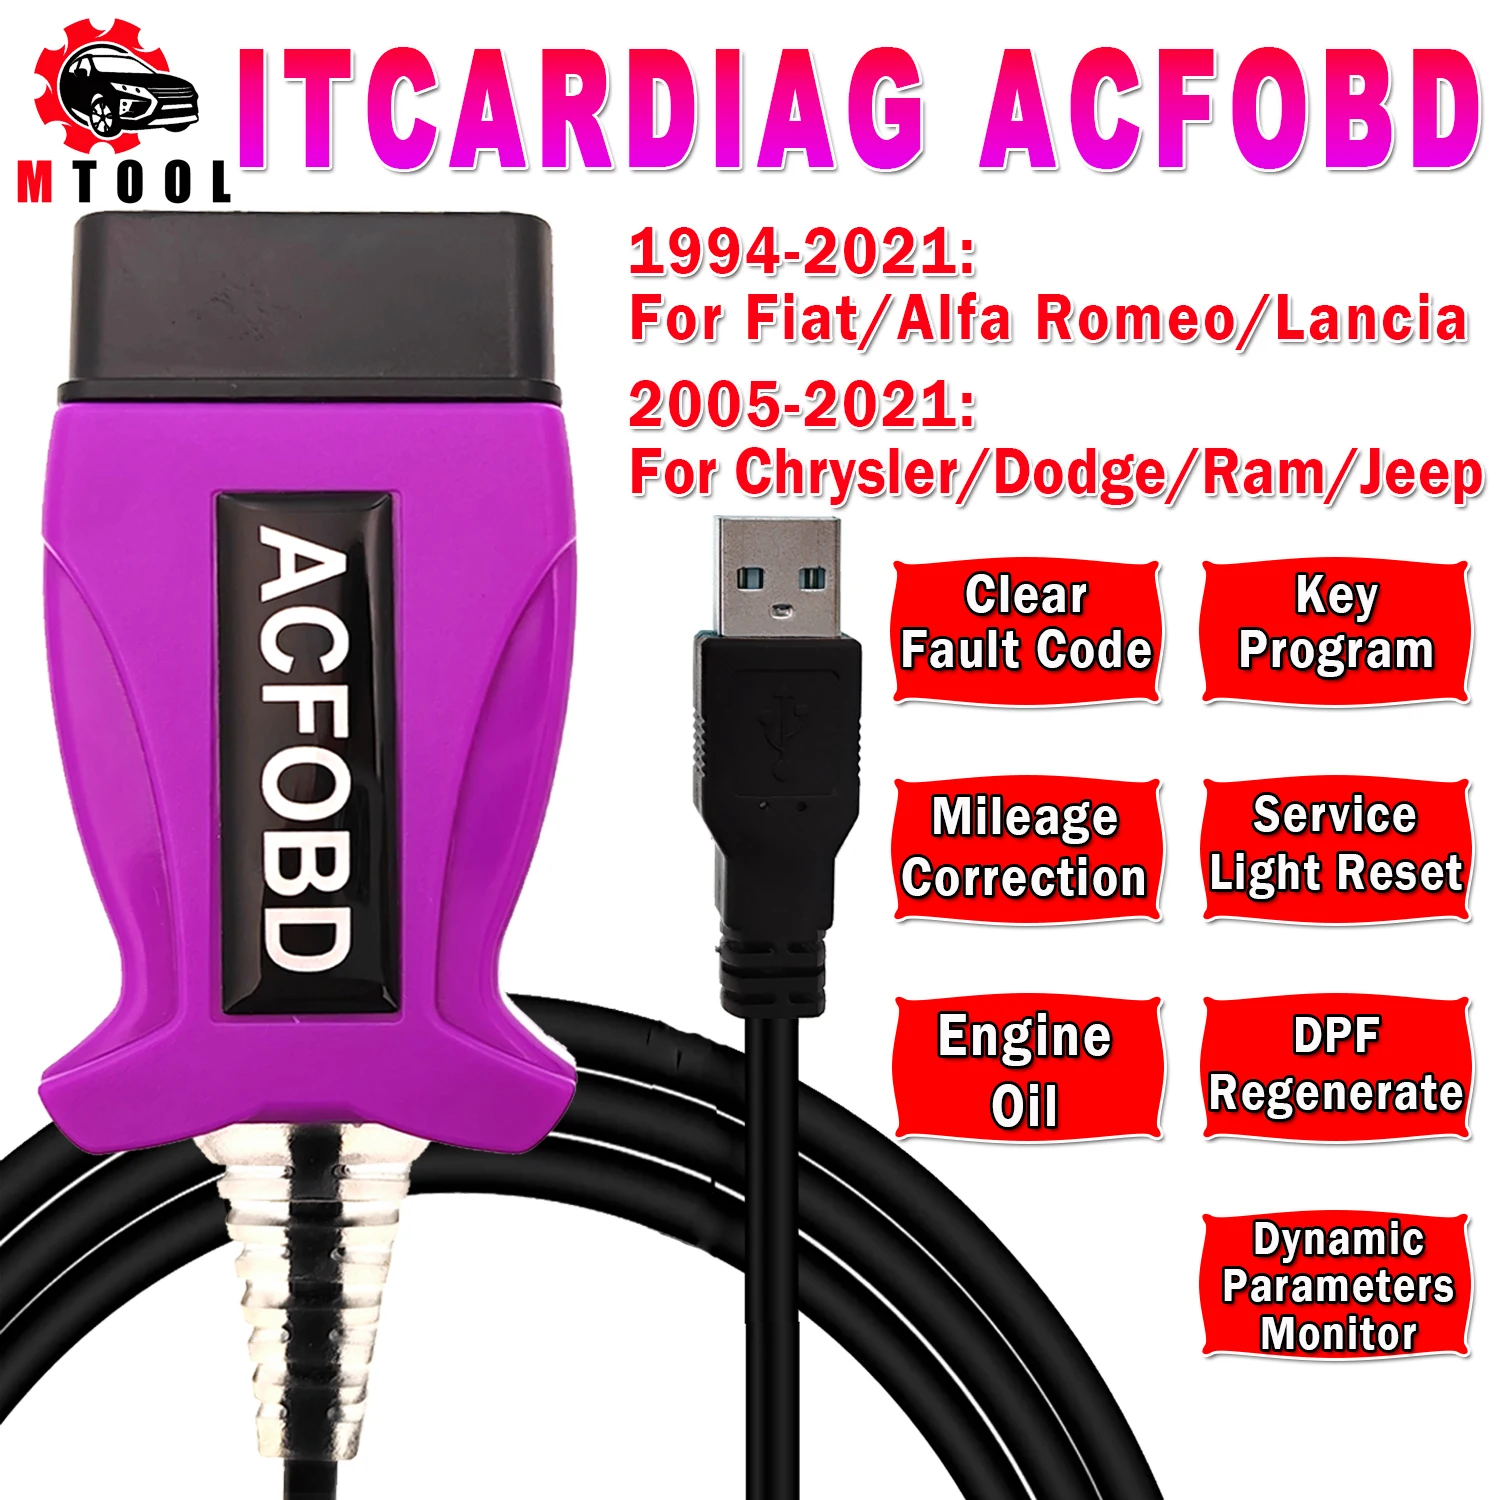 

Диагностический сканер ITCARDIAG ACFOBD для Fiat/Alfa/Romeo/Lancia/Chrysler/Dodge/Ram/Jeep